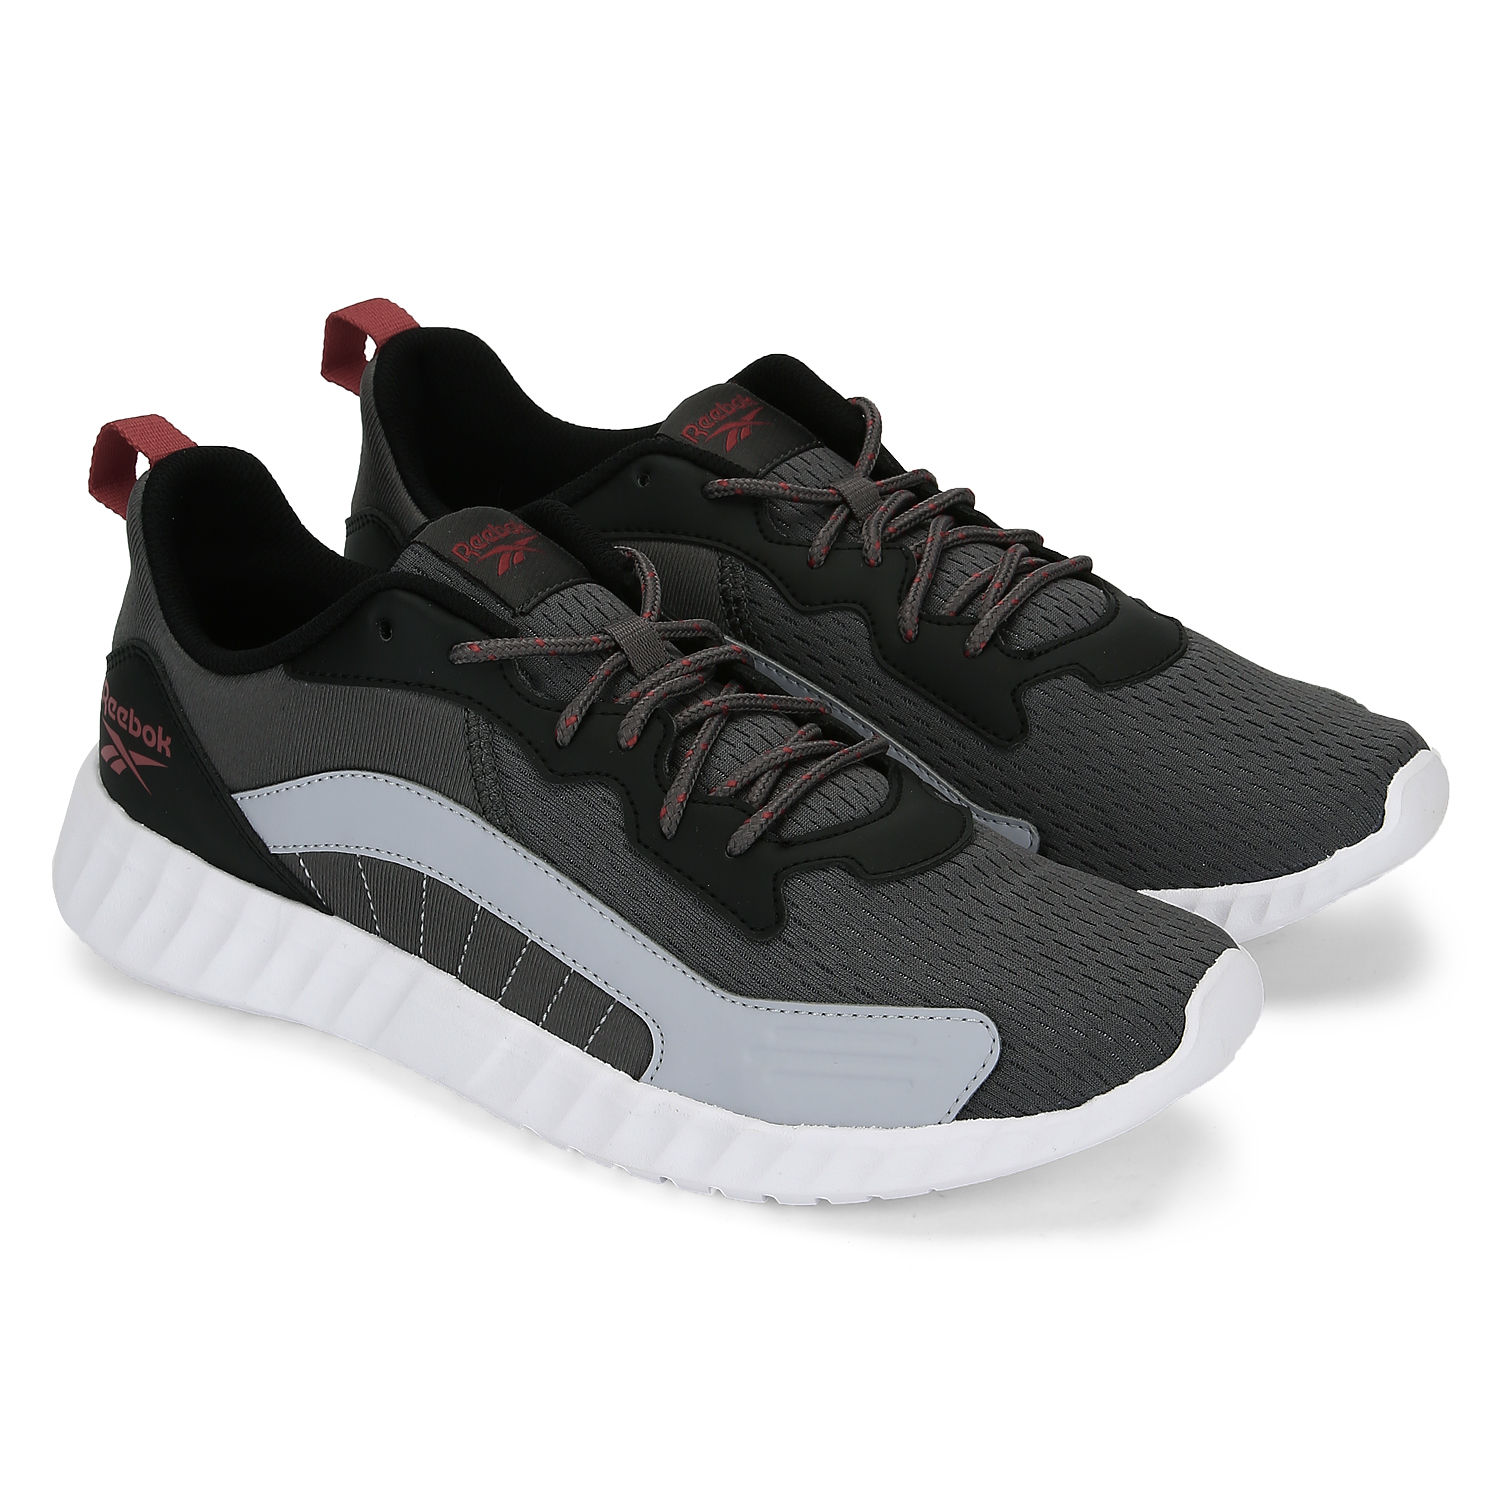 Reebok Off Roader Grey Running Shoes (hks56) - UK 6